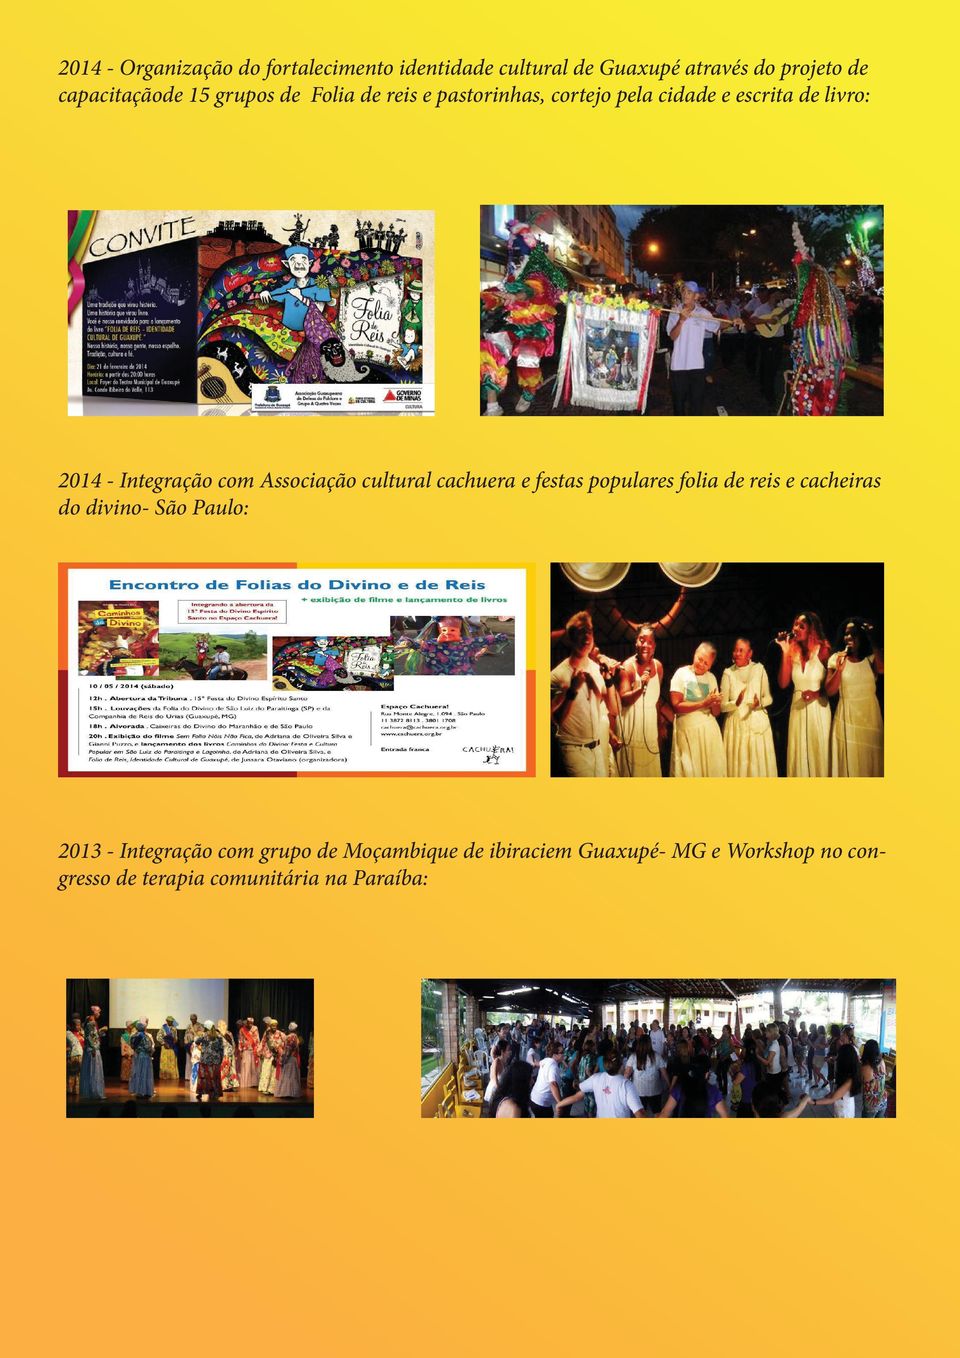 Associação cultural cachuera e festas populares folia de reis e cacheiras do divino- São Paulo: 2013 -